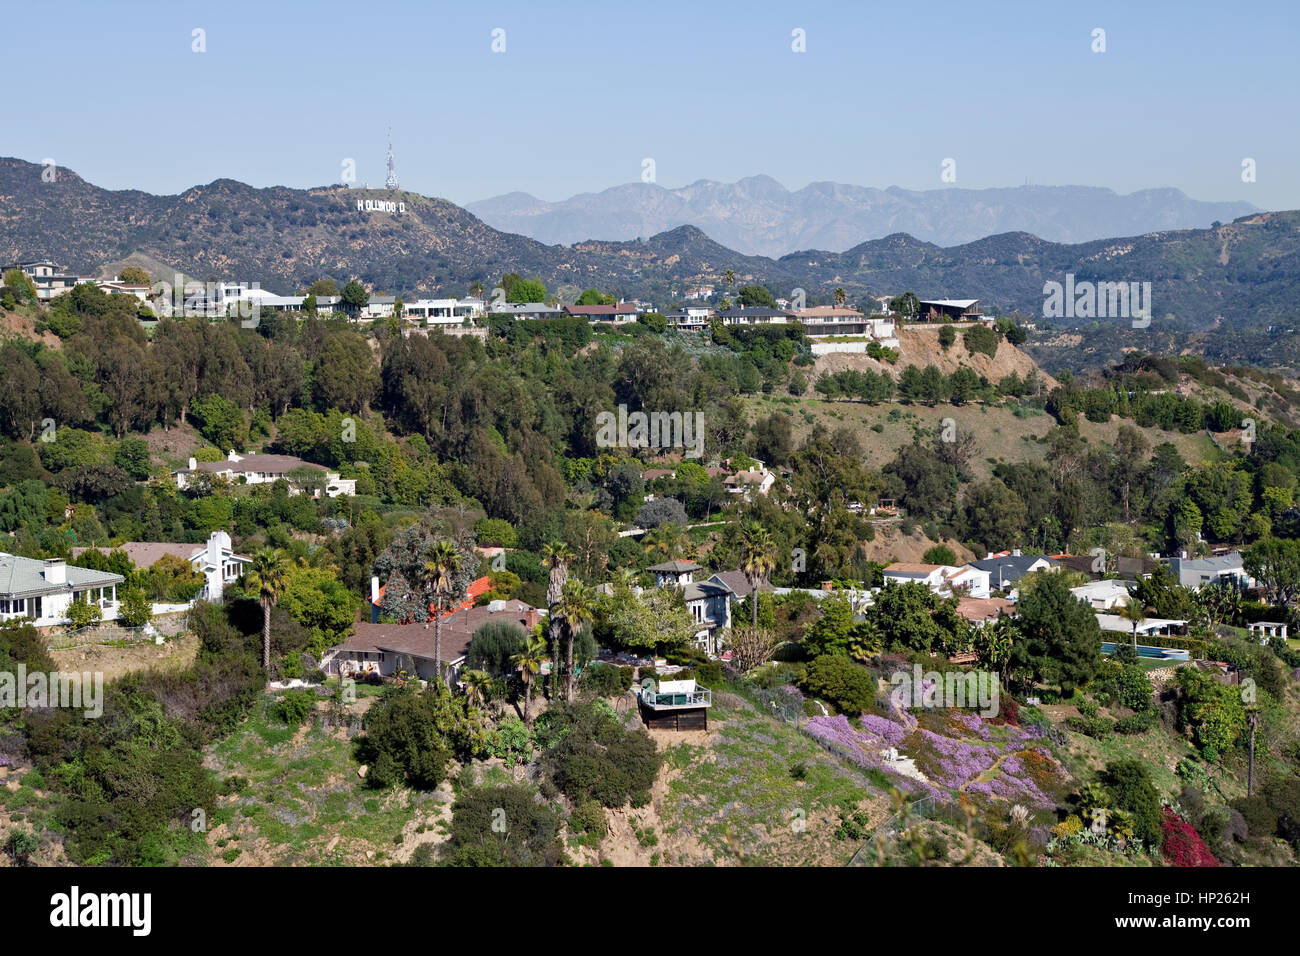 Hollywood, California, Stati Uniti d'America - febbraio, 2° 2011: Hollywood Sign e case di collina vista dal famoso parco Runyon al di sopra di Los Angeles. Foto Stock